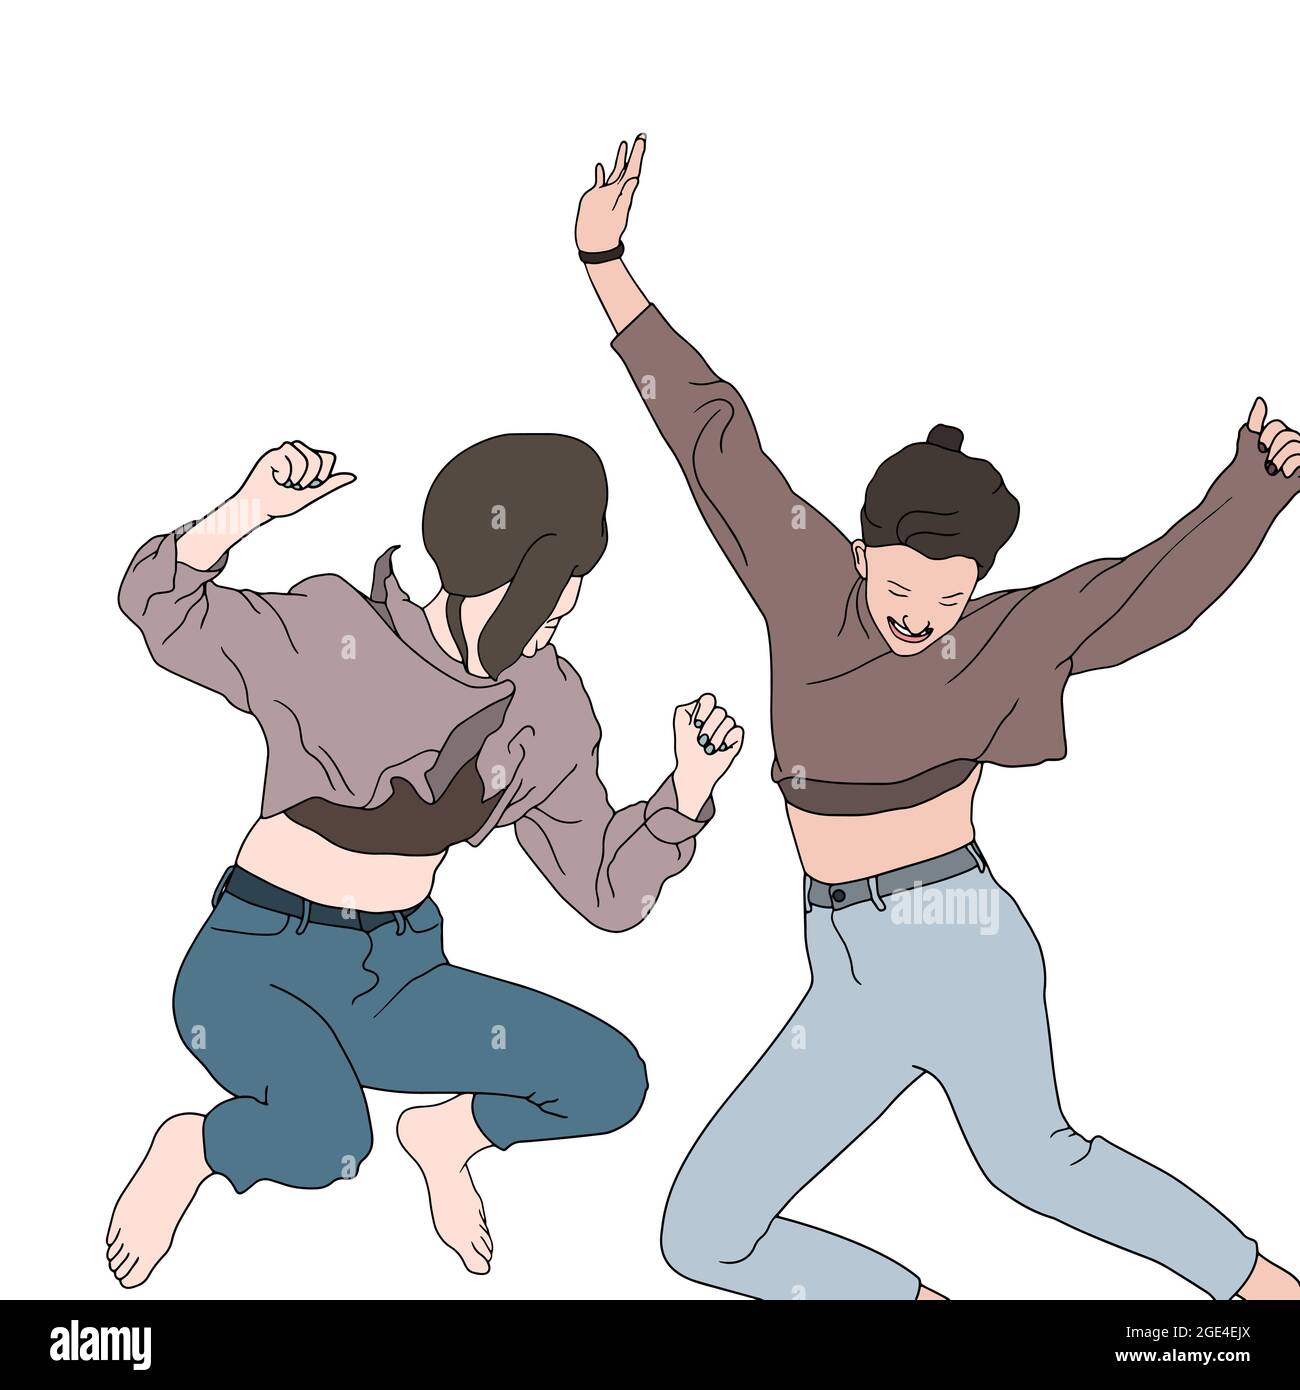 Ragazze giovani che saltano in aria. Illustrazione di personaggi cartoni animati disegnati a mano di amici felici. Foto Stock